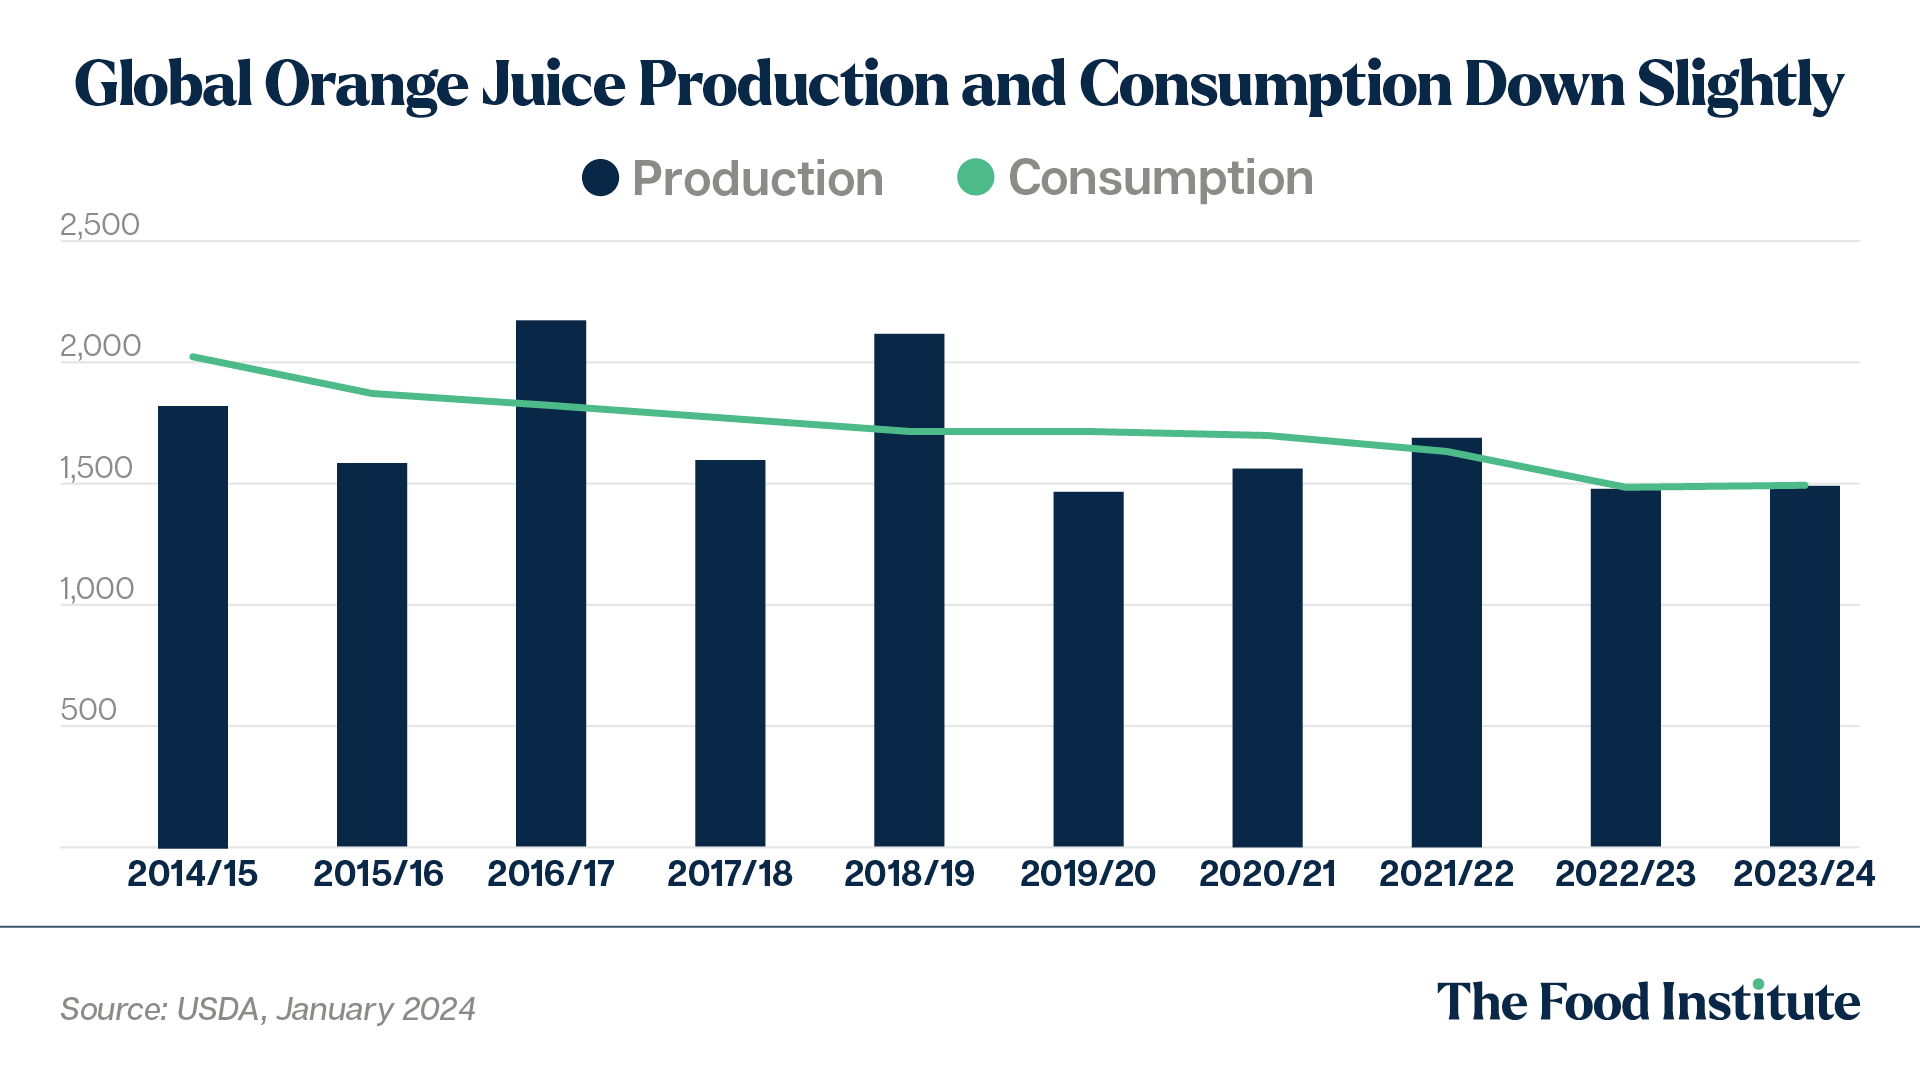 OJ consumption/production